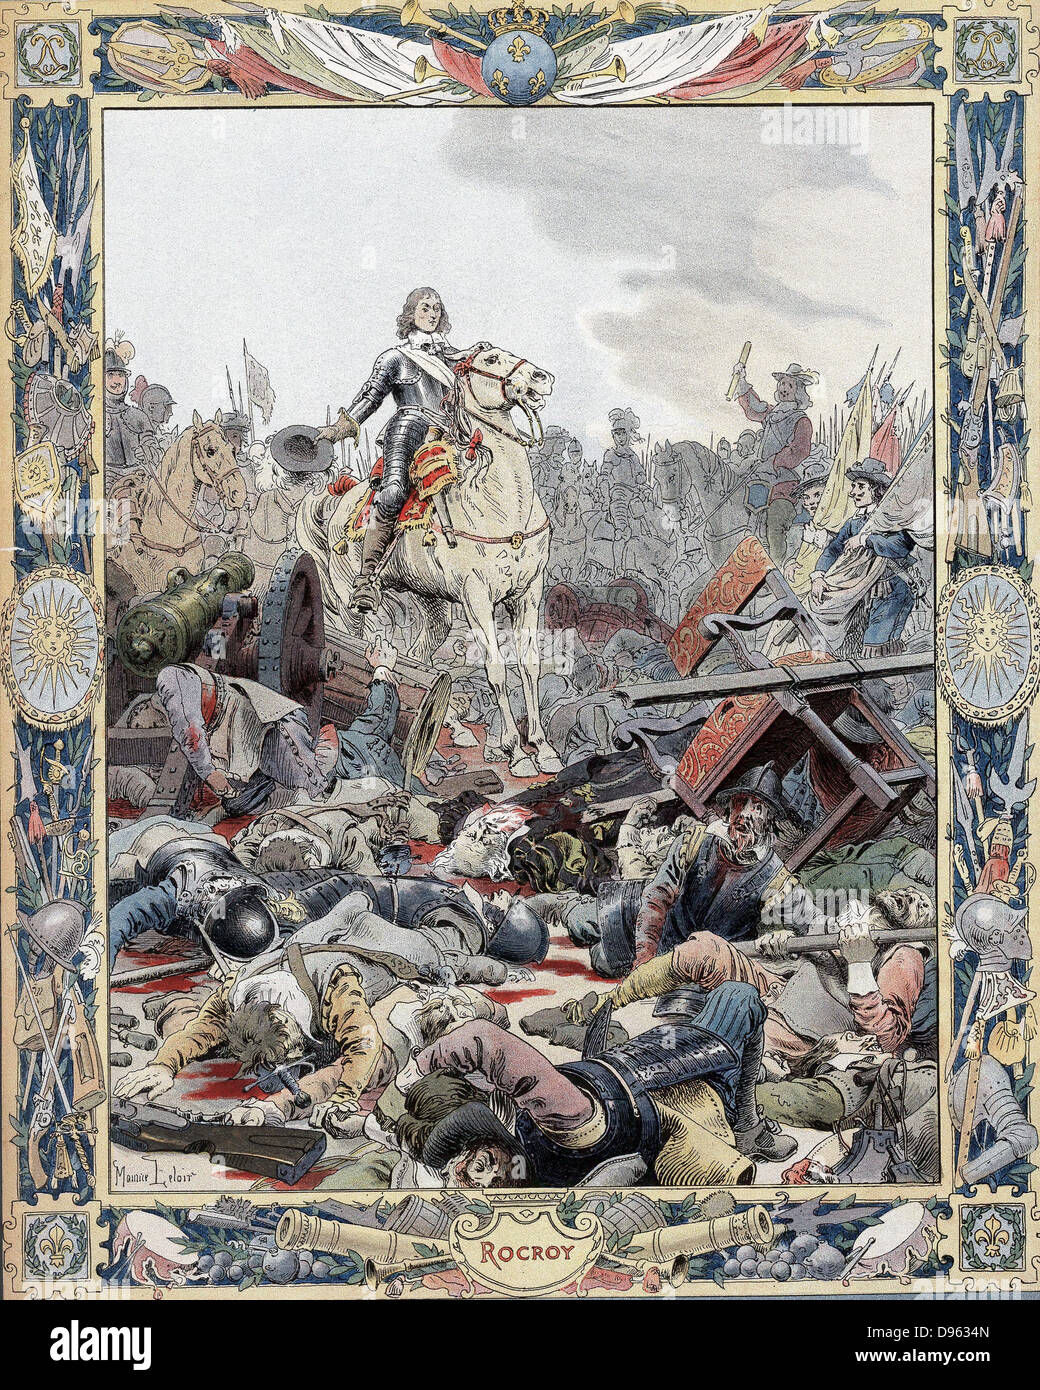 Guerra de Treinta Años: La Batalla de Rocroi (Rocroy), 19 de mayo de 1643, el español derrotado por franceses bajo el Duc d'Enghien, Príncipe de Conde (1621-1686), conocido como el gran (Gran) Conde. Foto de stock